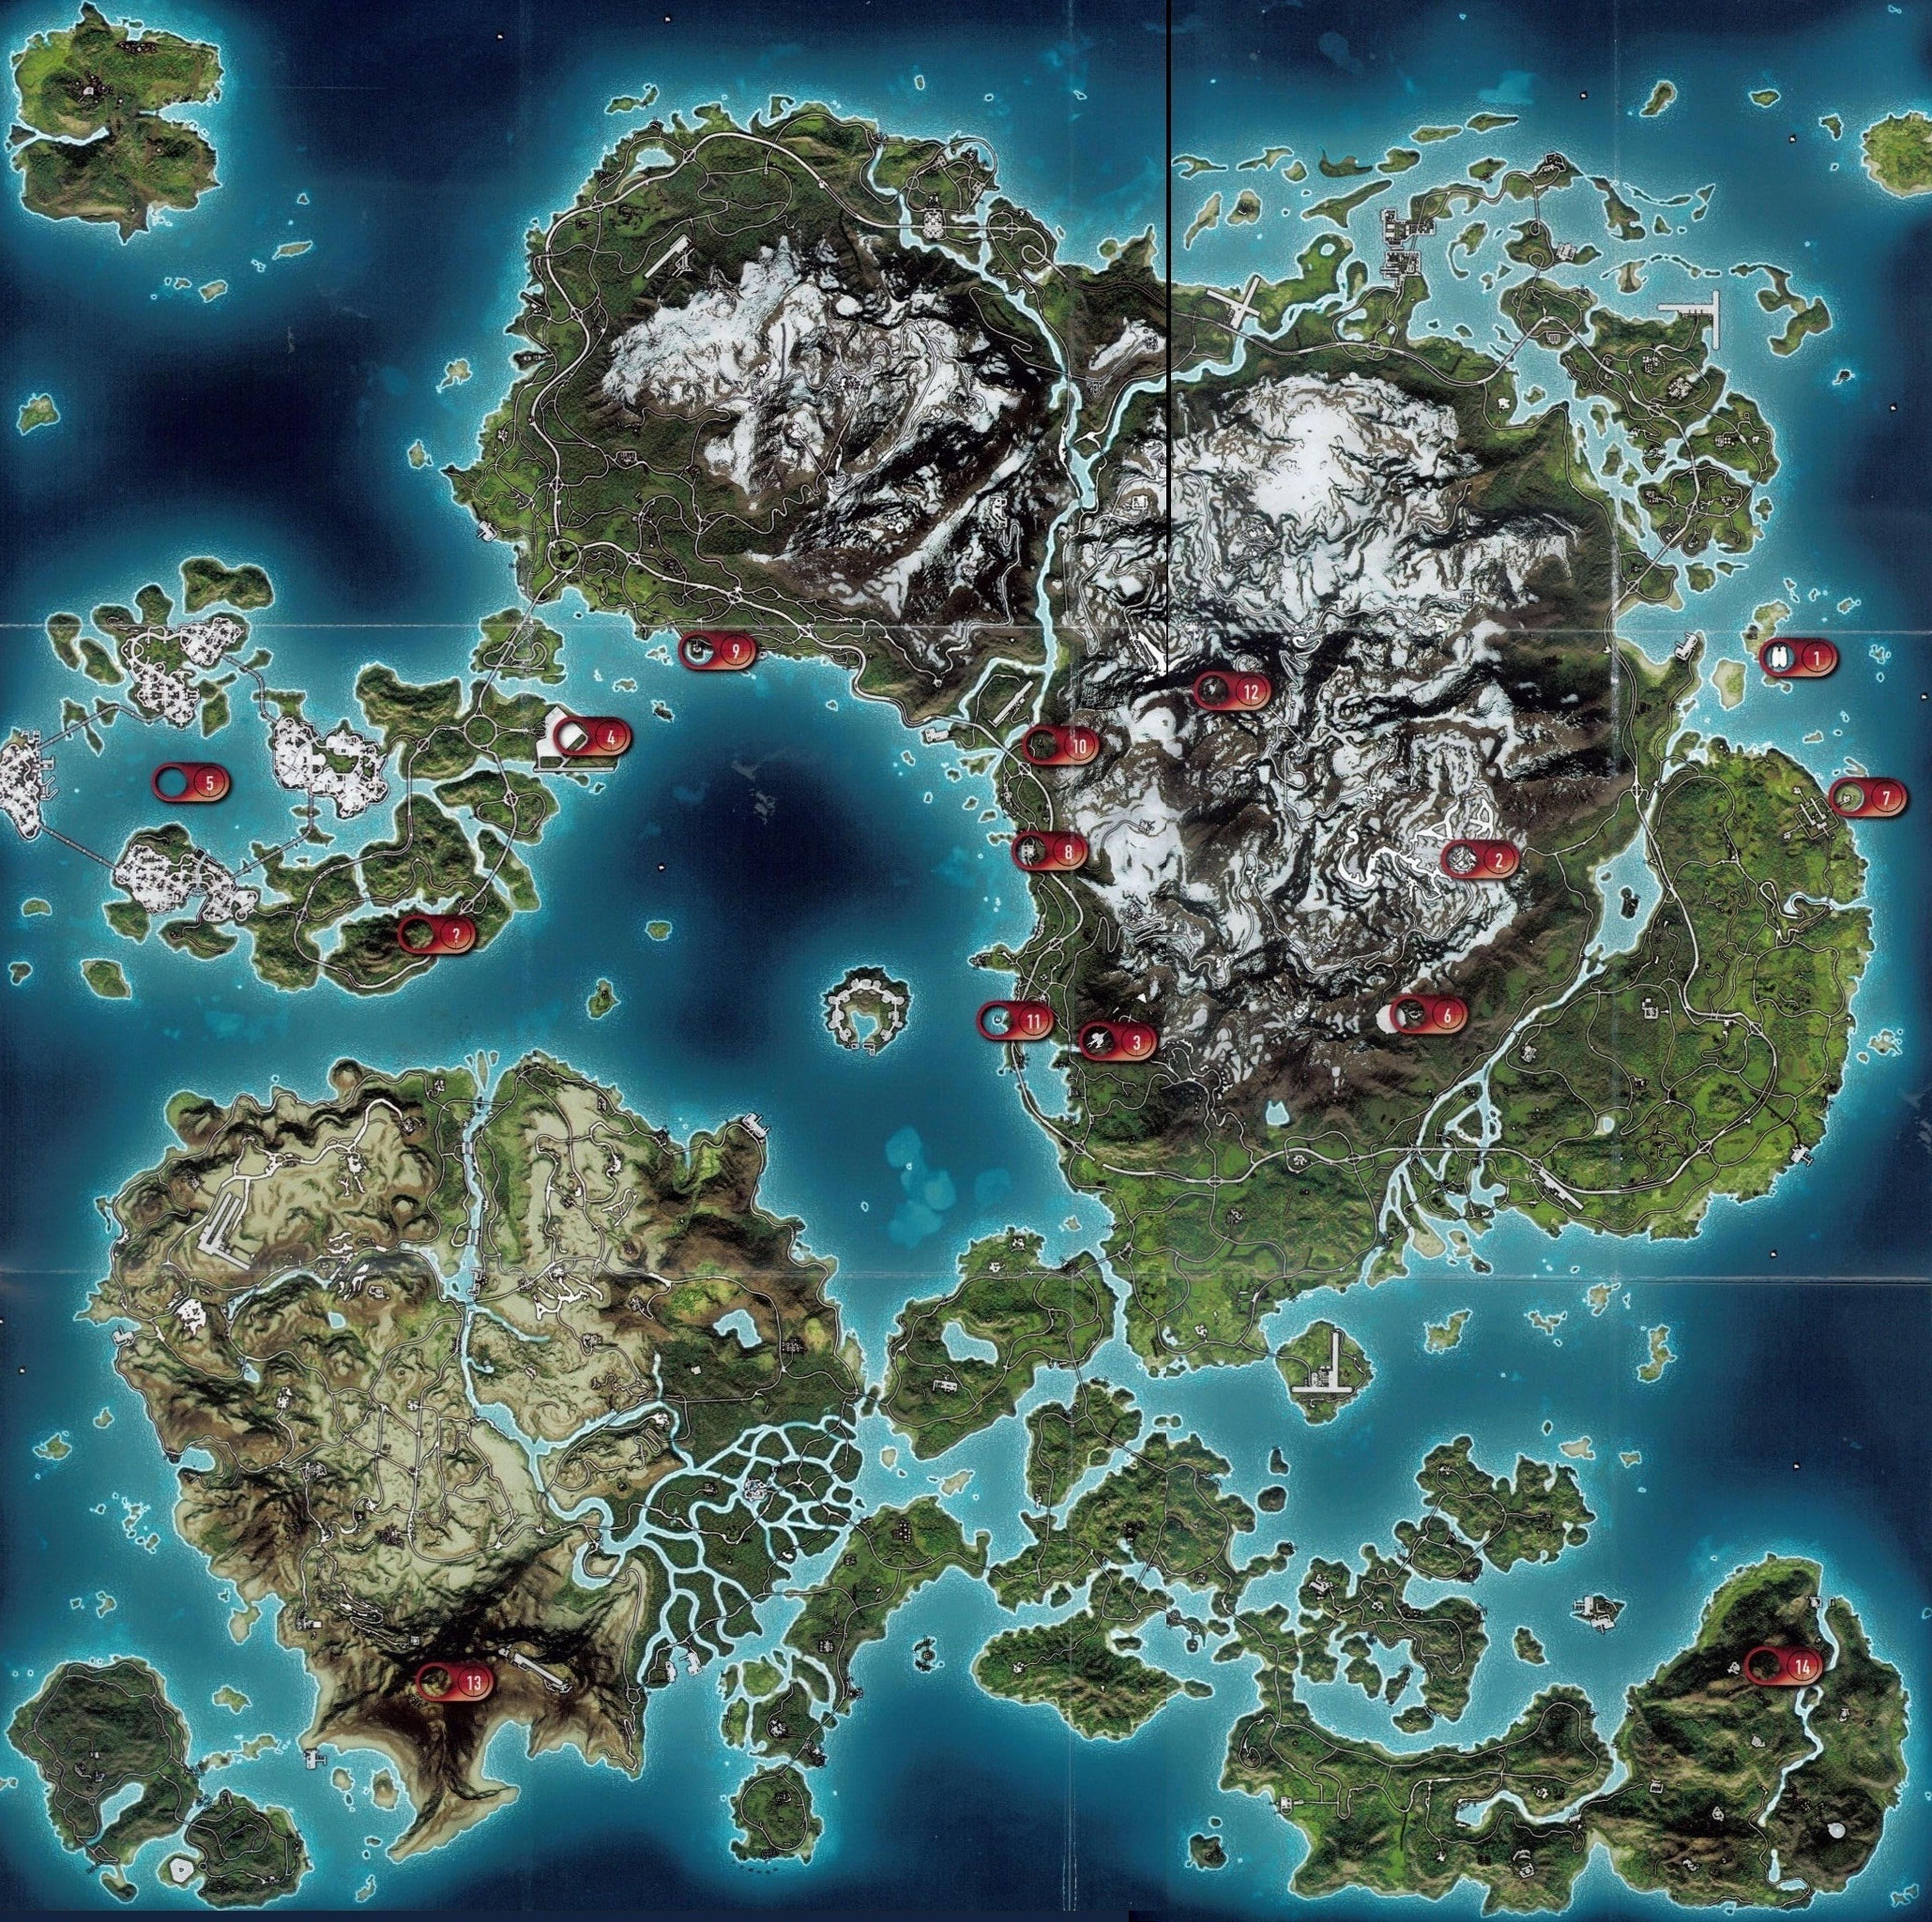 El mapa de GTA V comparado con otros sandbox